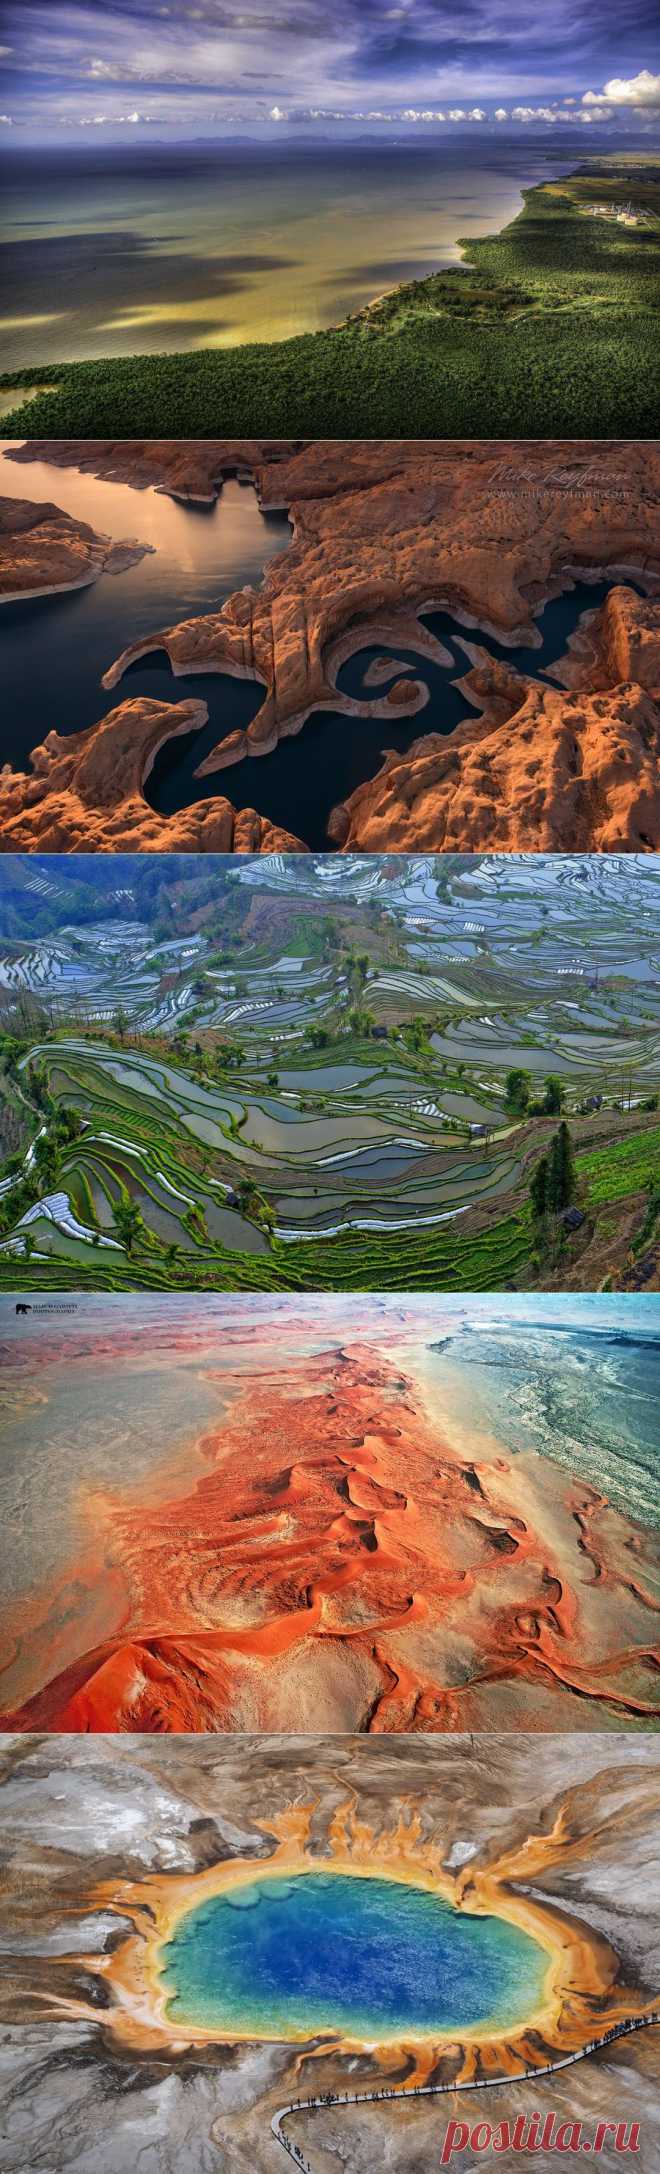 55 аэрофотографий о том, что наша планета самая красивая • НОВОСТИ В ФОТОГРАФИЯХ